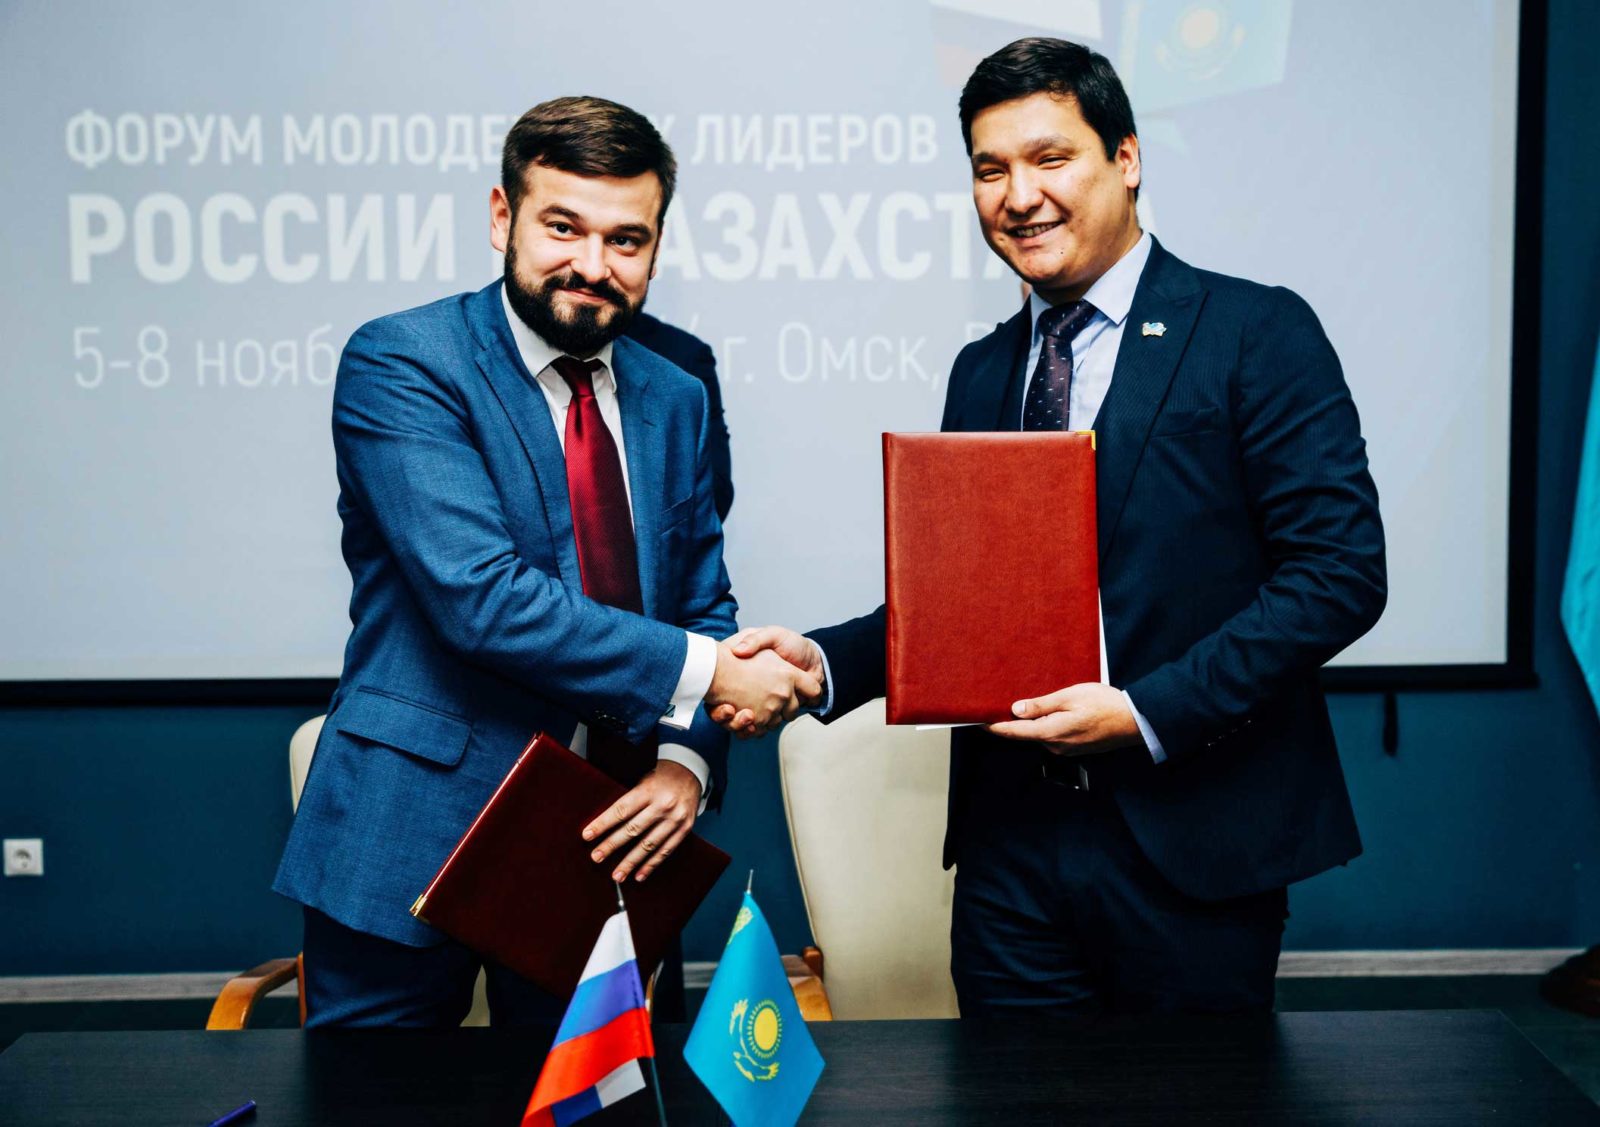 На Форуме молодежных лидеров России и Казахстана подписали соглашение о реализации молодежных проектов в сфере развития территорий